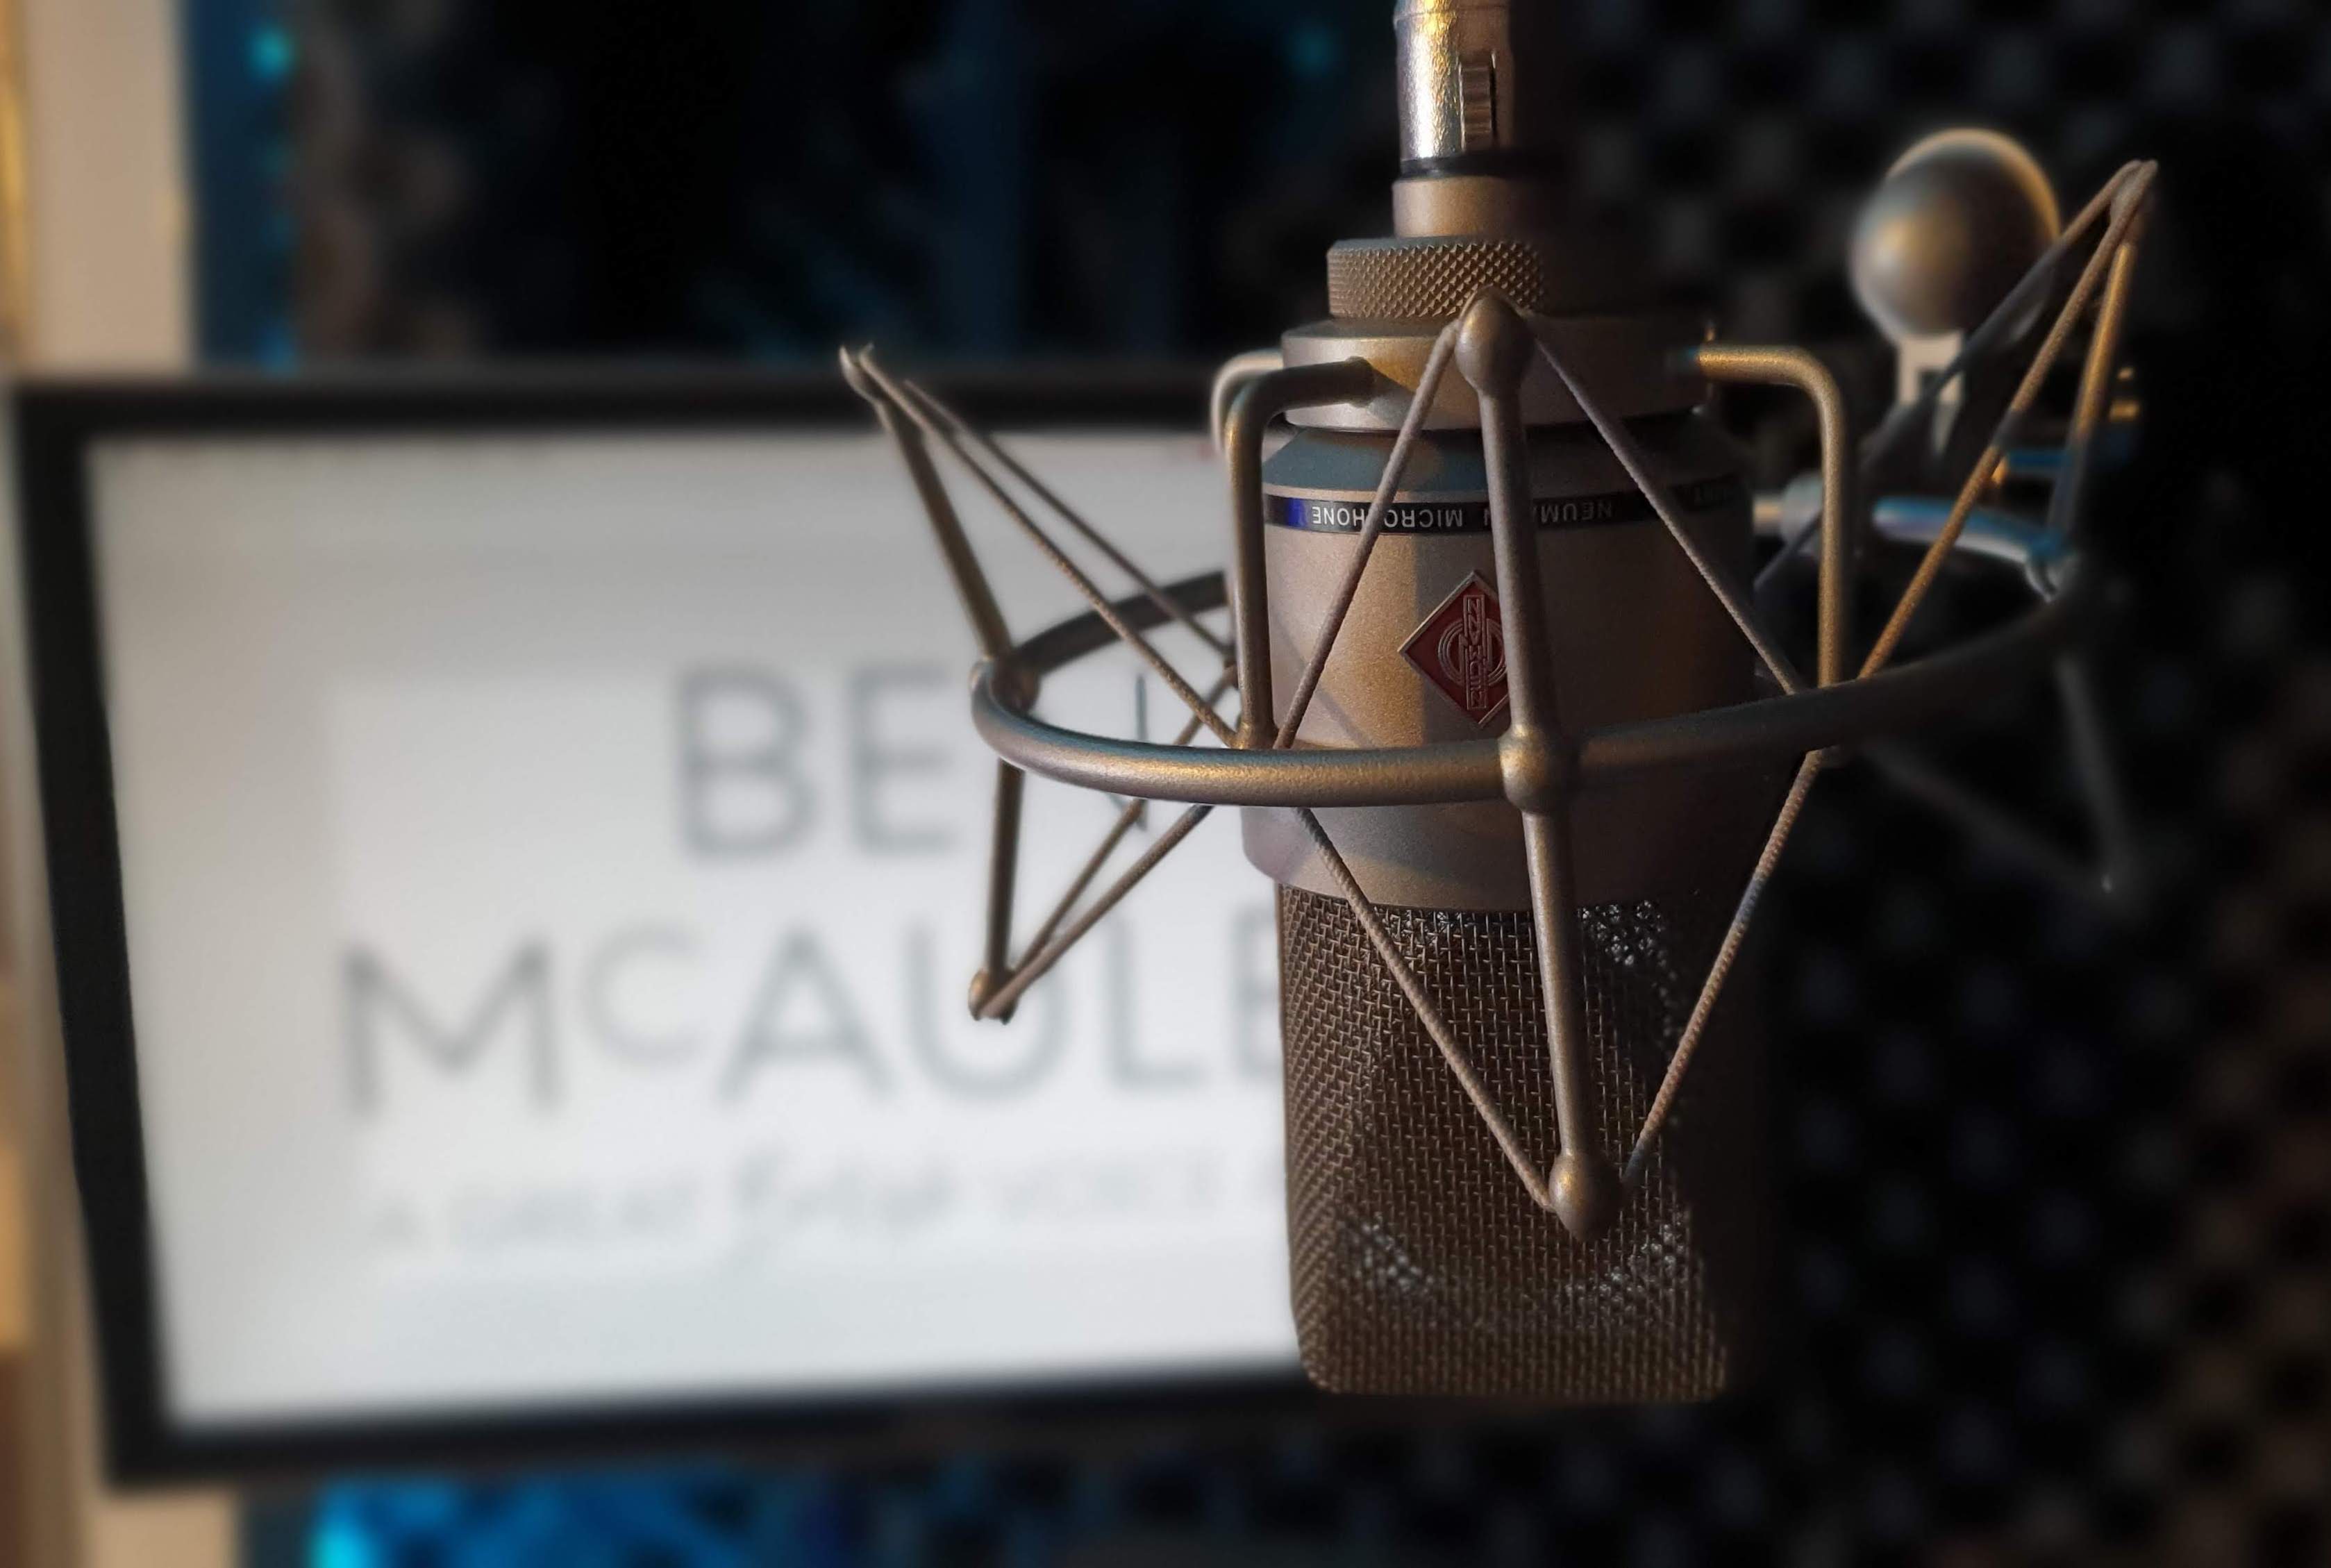 Ben McAuley Voiceover Studio Finder